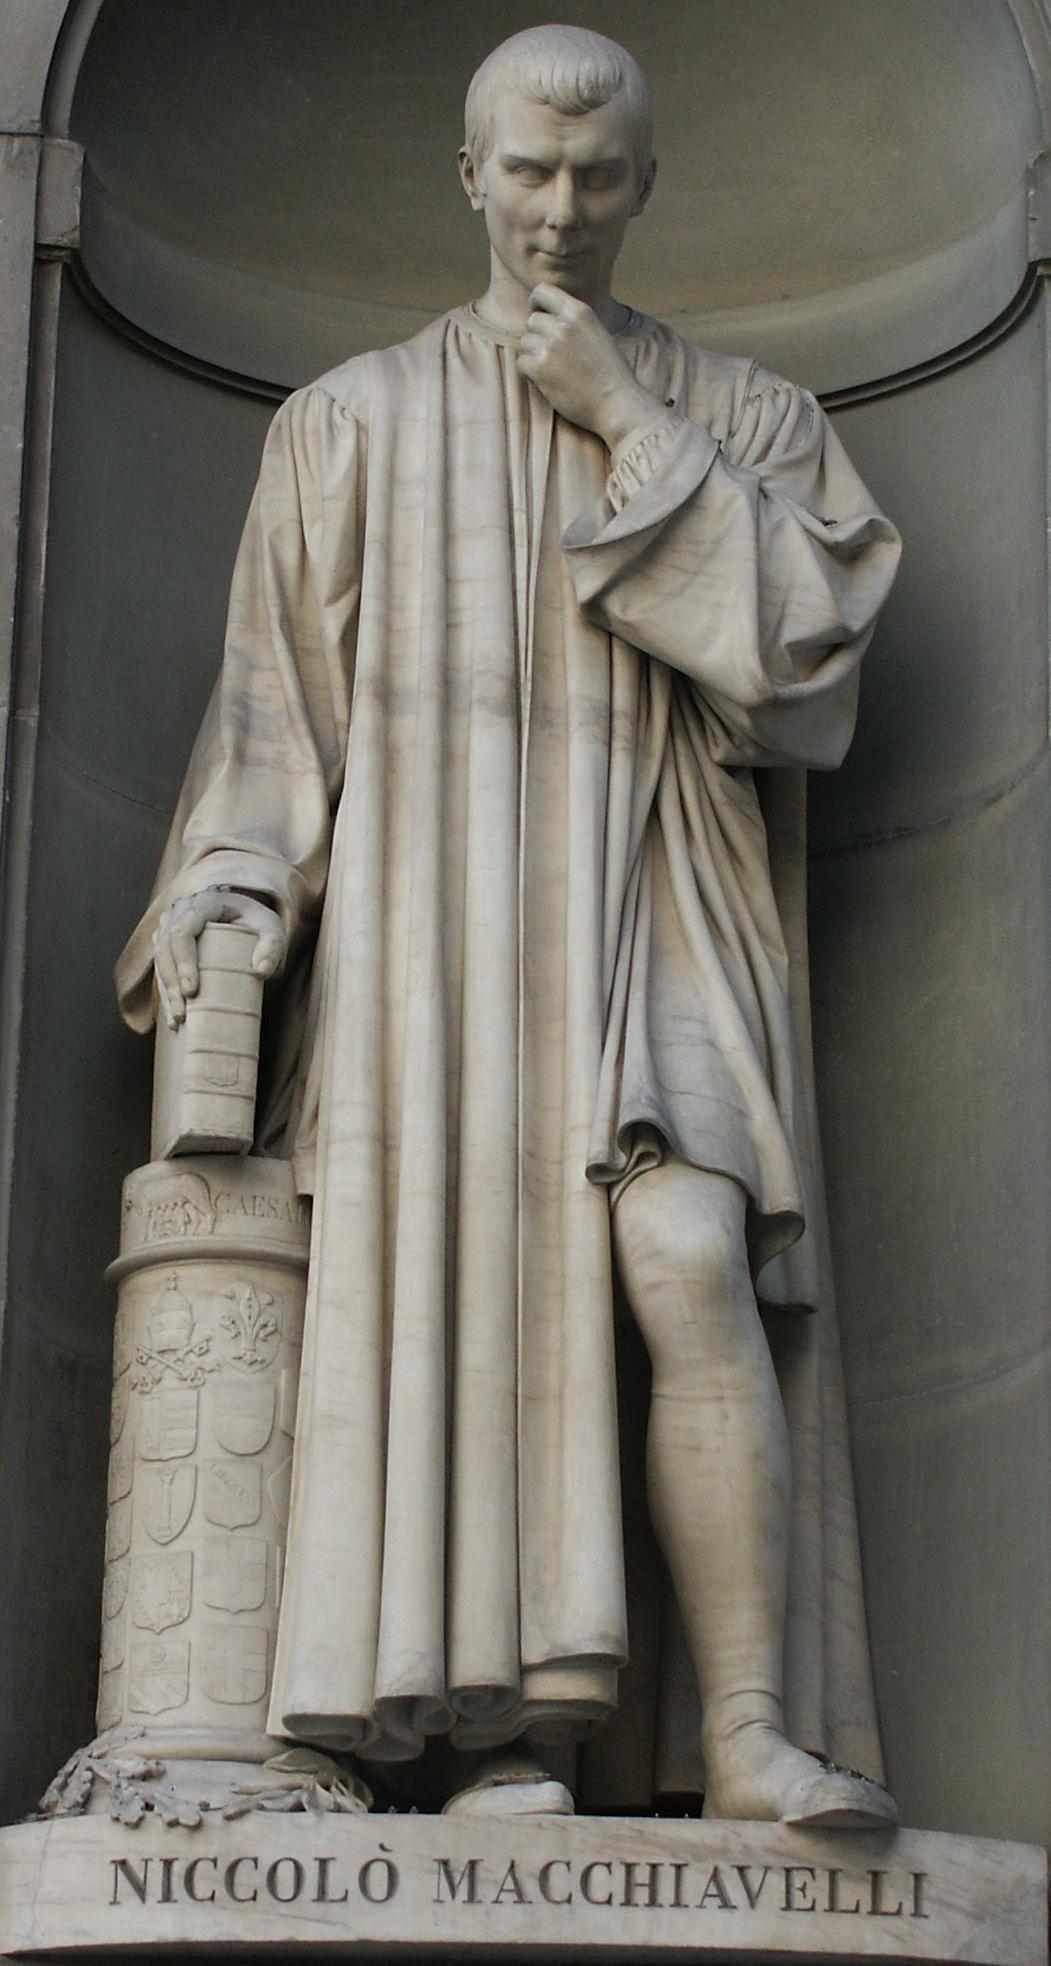 Machiavelli statue at Uffizi